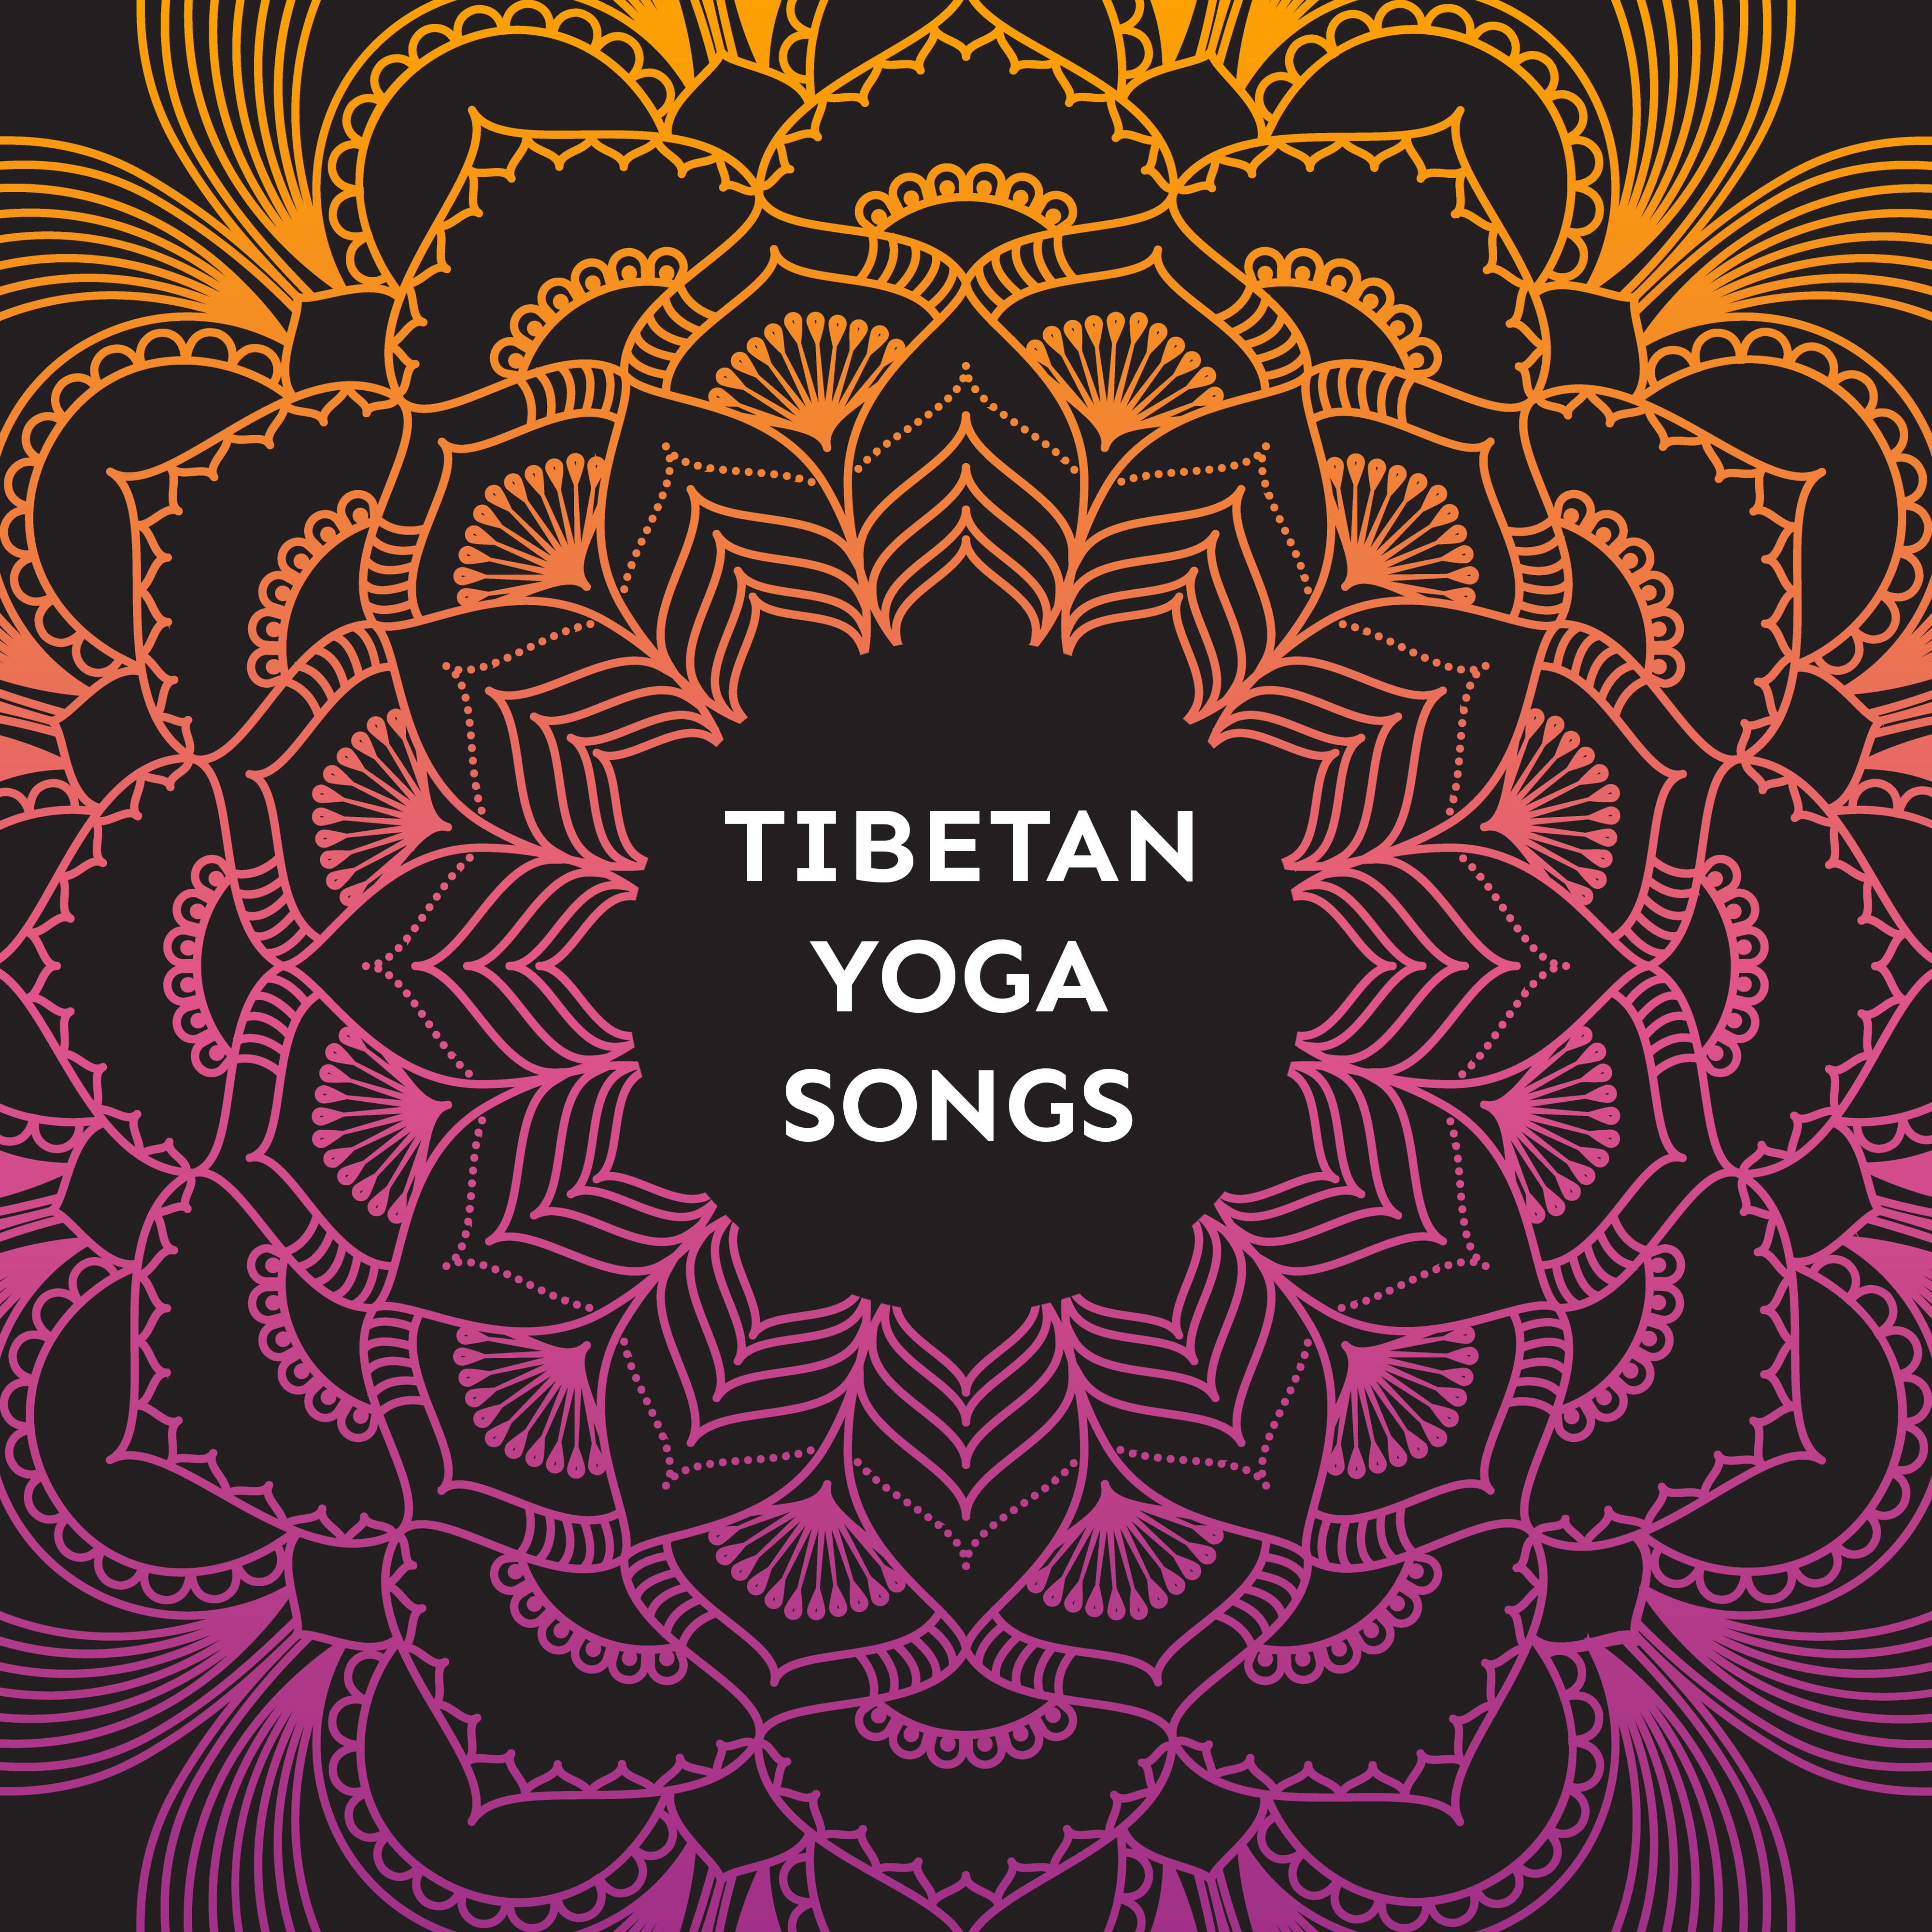 Tibetan Yoga Songs